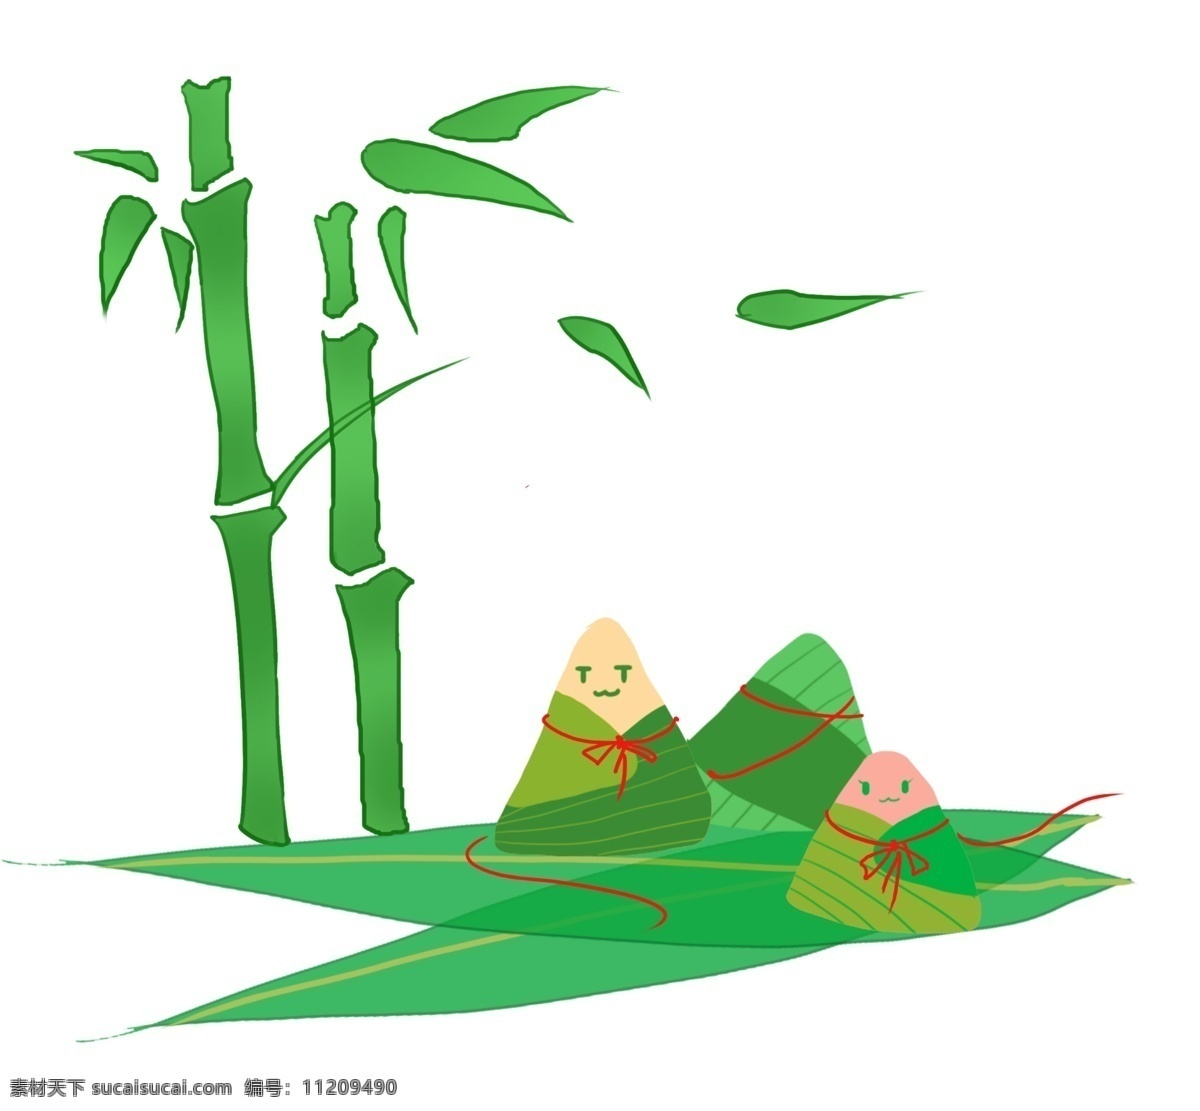 端午节 竹子 粽子 插画 绿色的竹子 卡通插画 粽子插画 端午节插画 纪念屈原 雄黄酒 美味的粽子